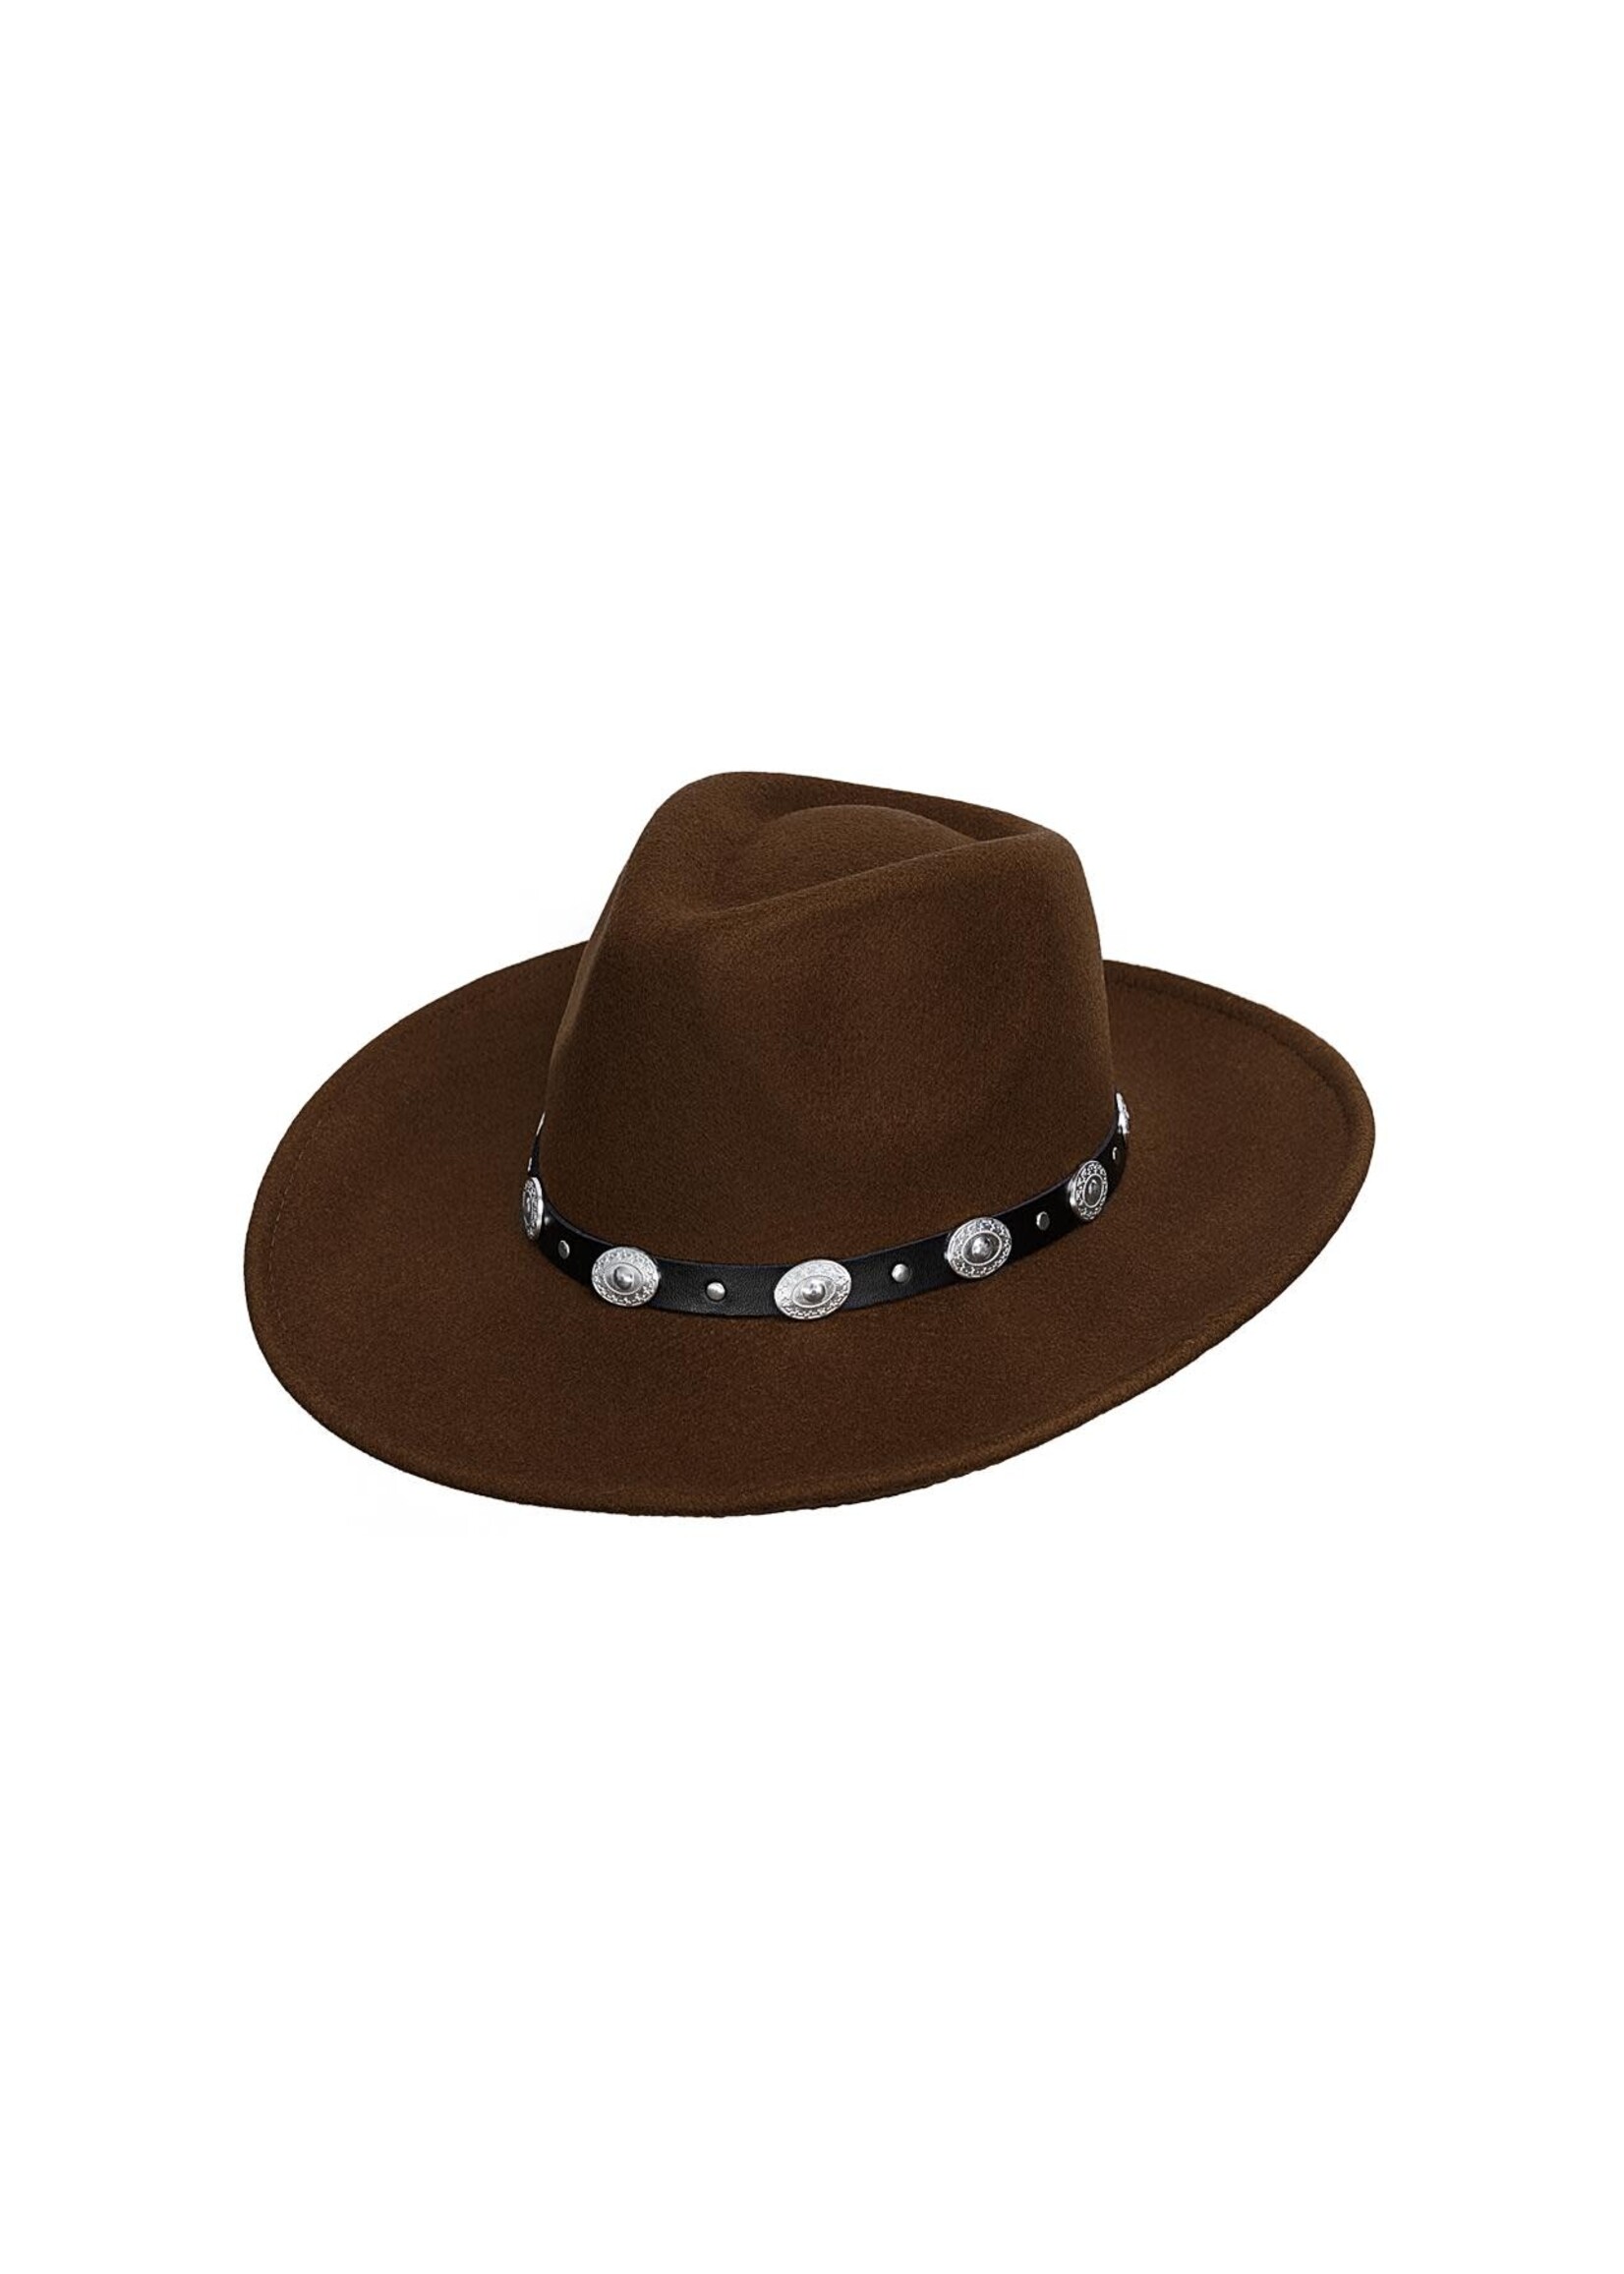 Fedora hoed met stoere details - Bruin